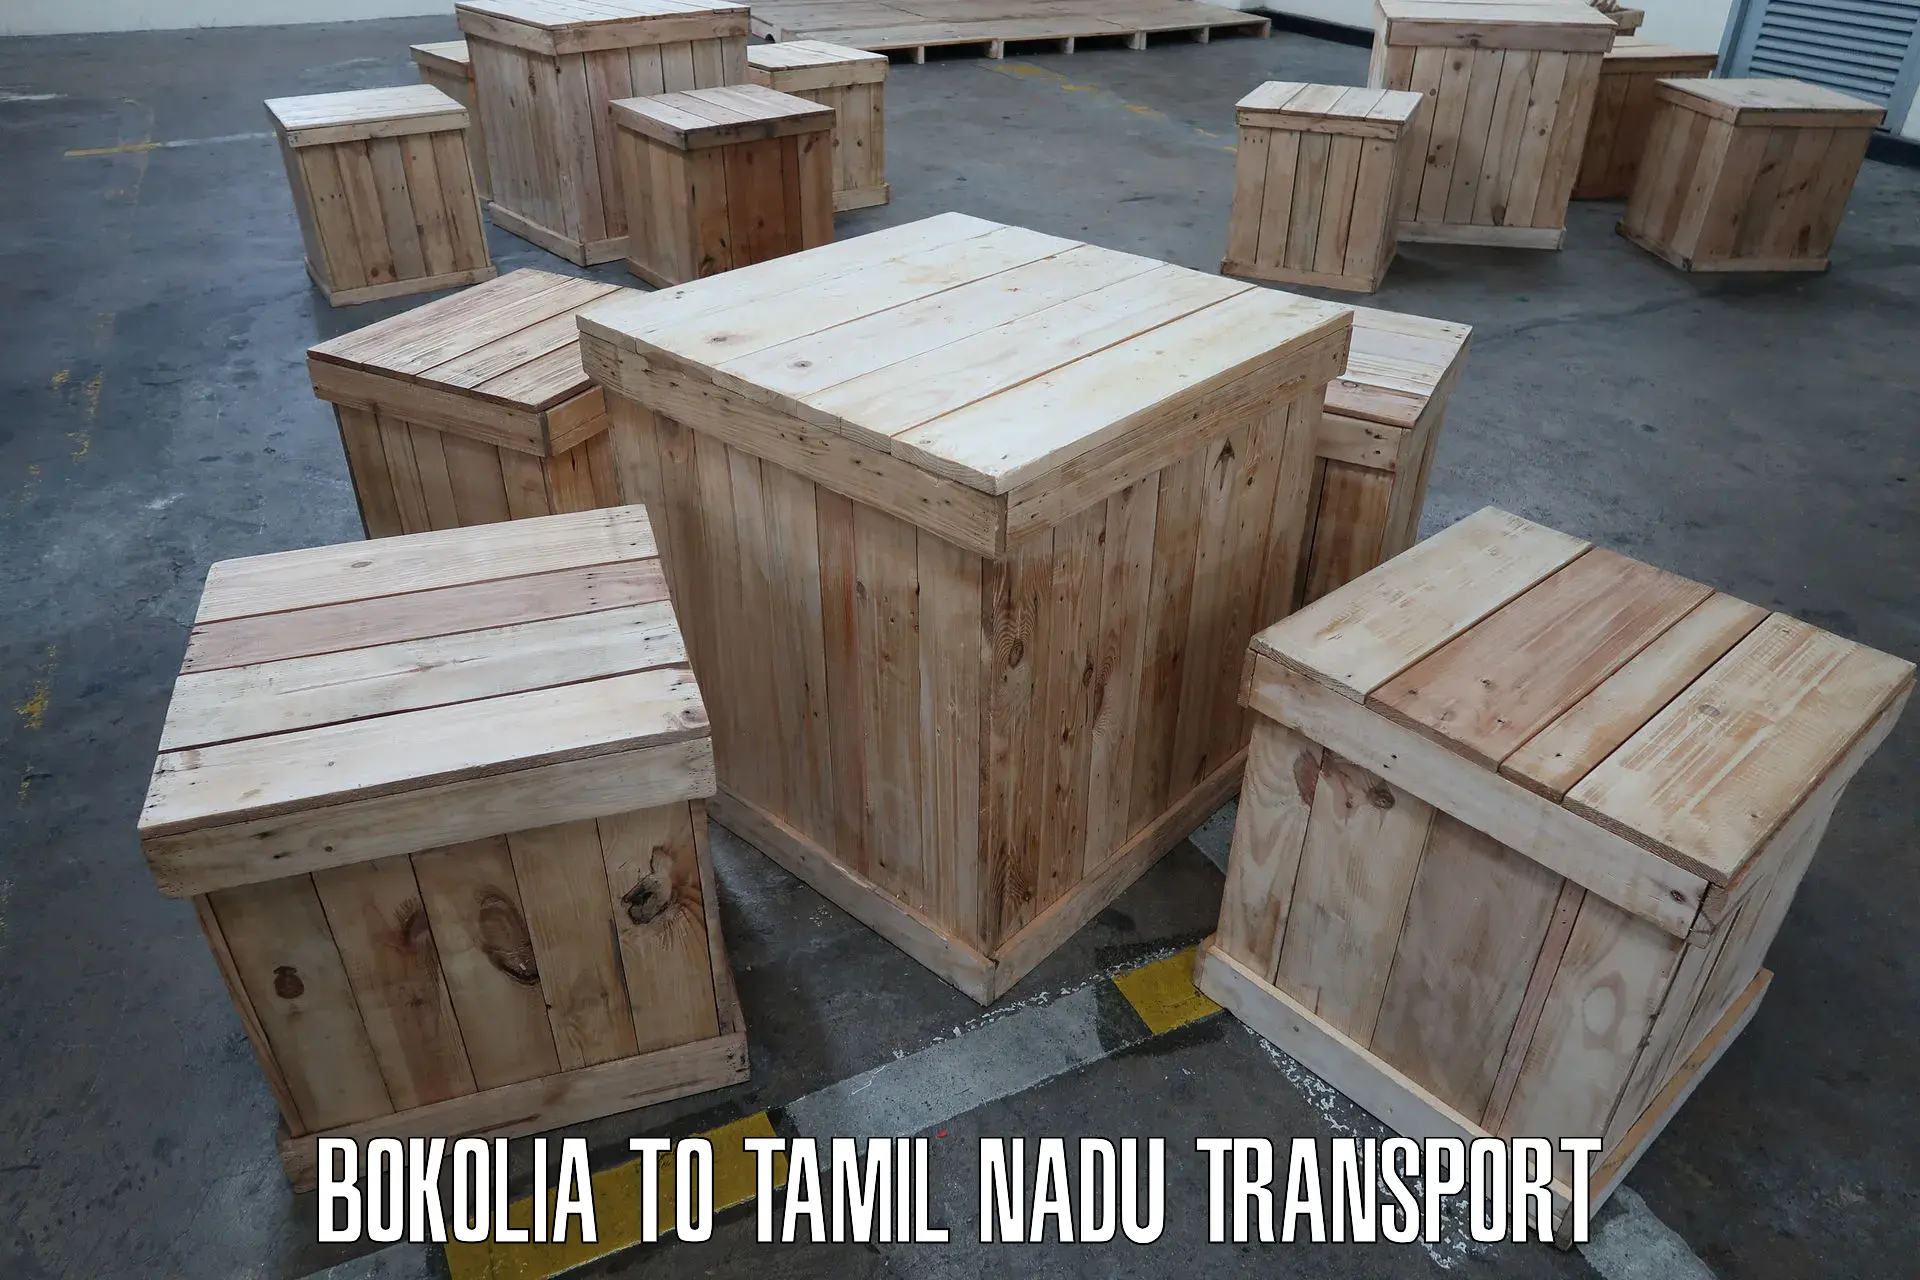 Daily parcel service transport Bokolia to Sankarapuram